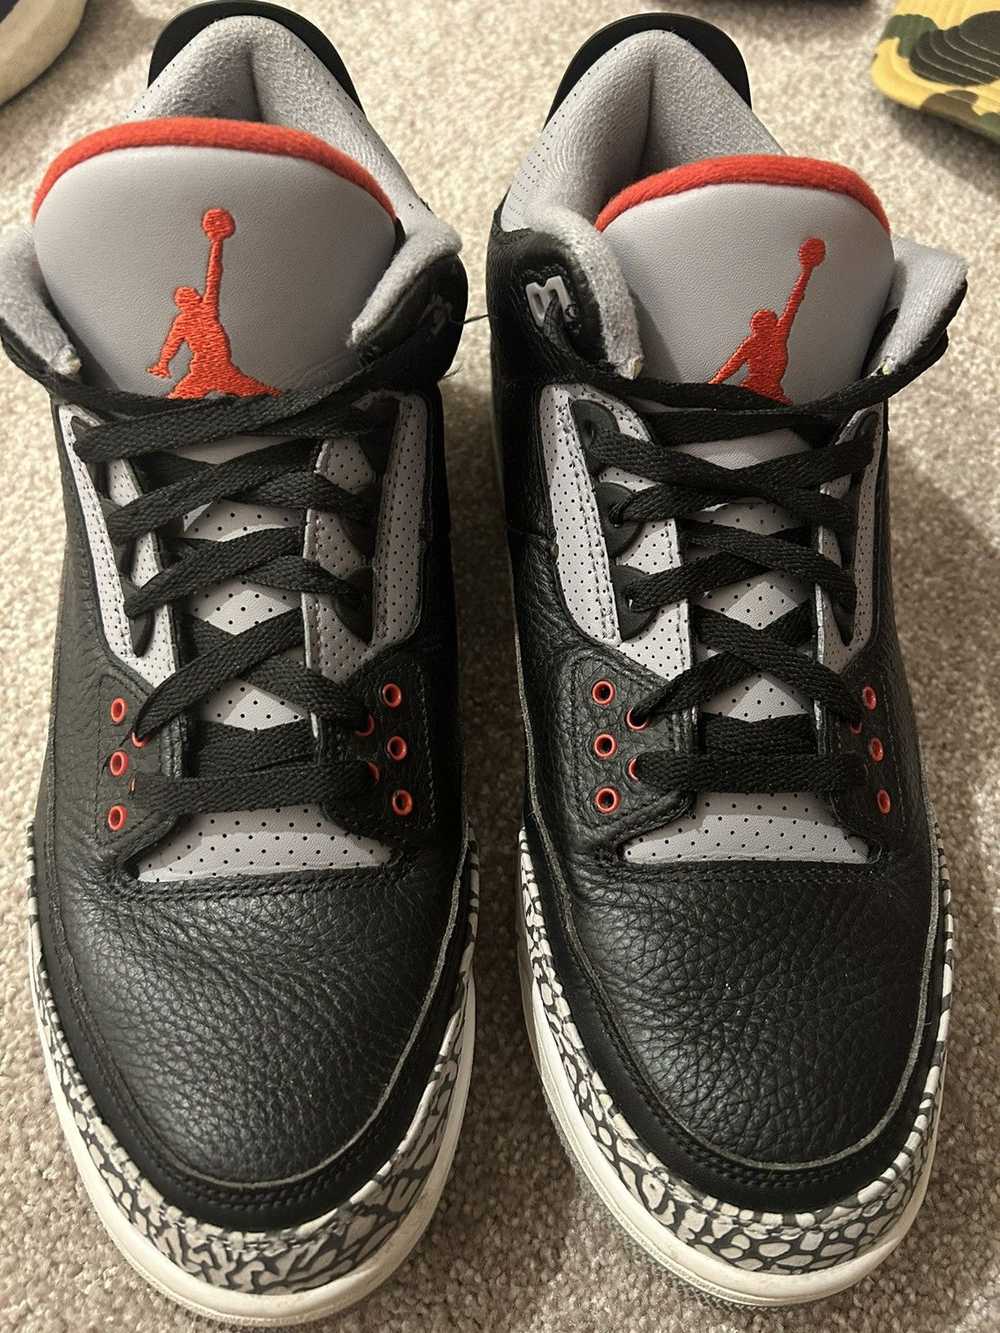 Jordan Brand Nike air Jordan black cement 3s 2018 - image 9